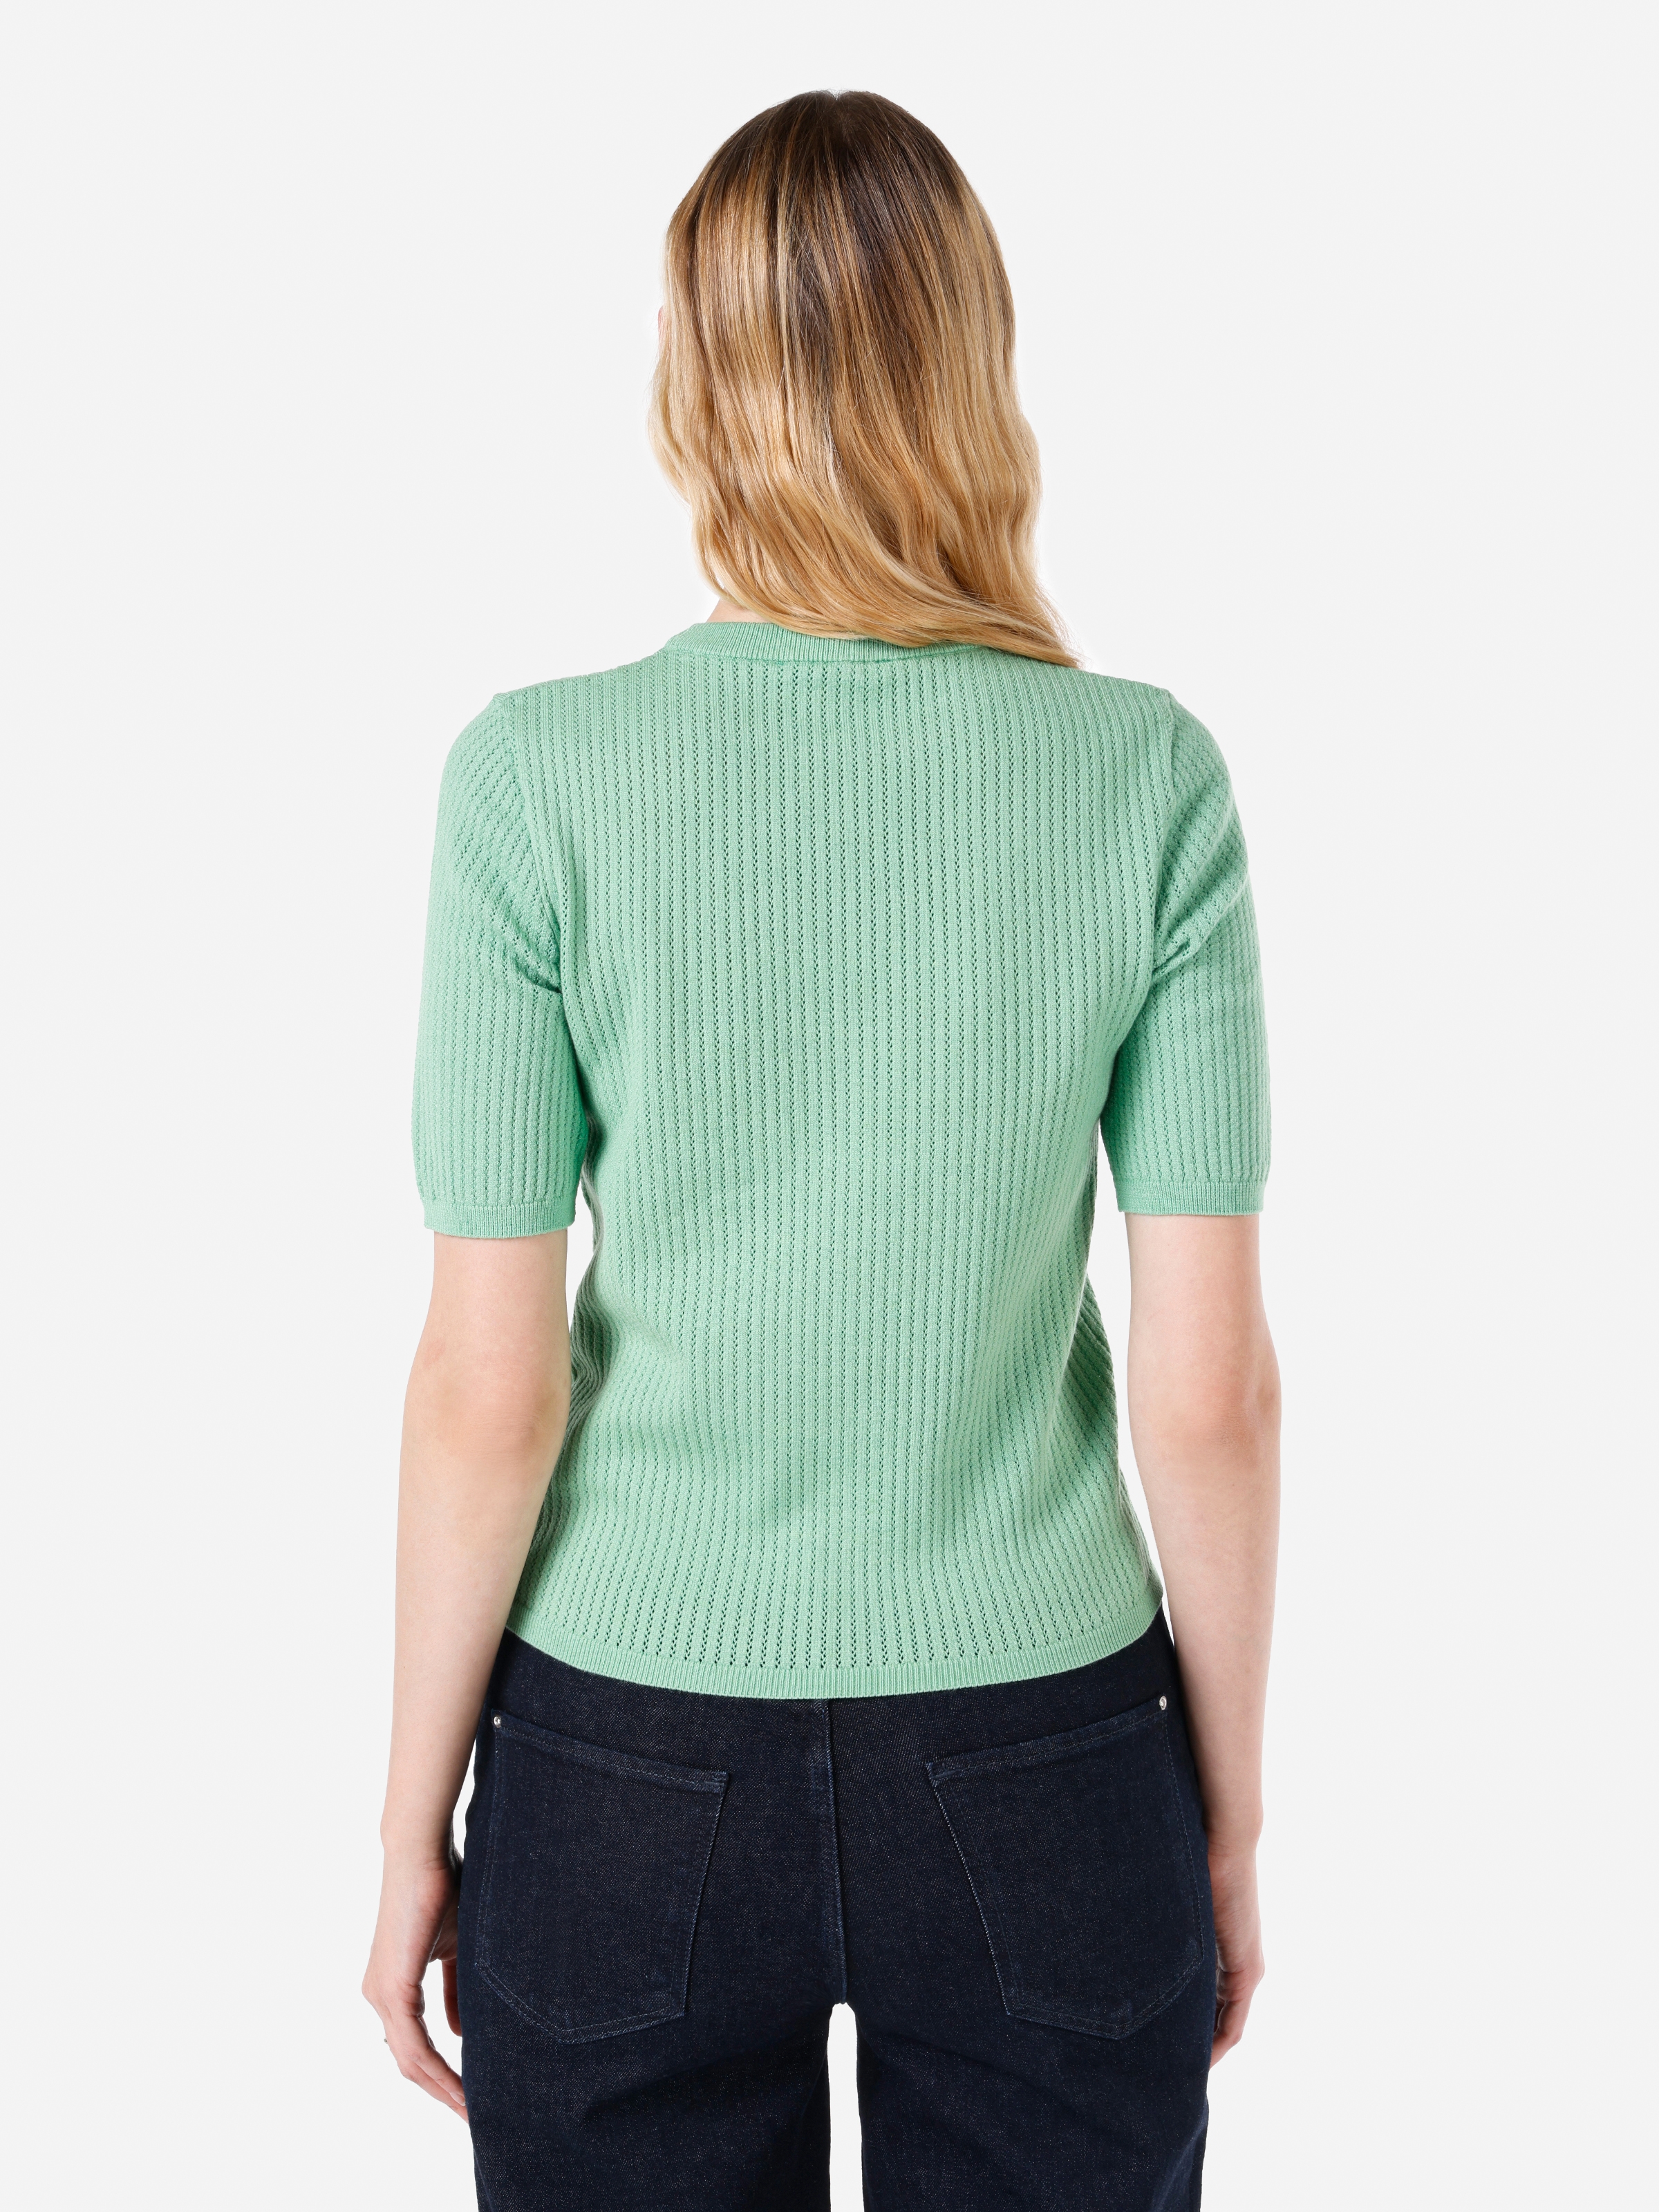 Показати інформацію про  светр із коротким рукавом Жіночий Зелений  